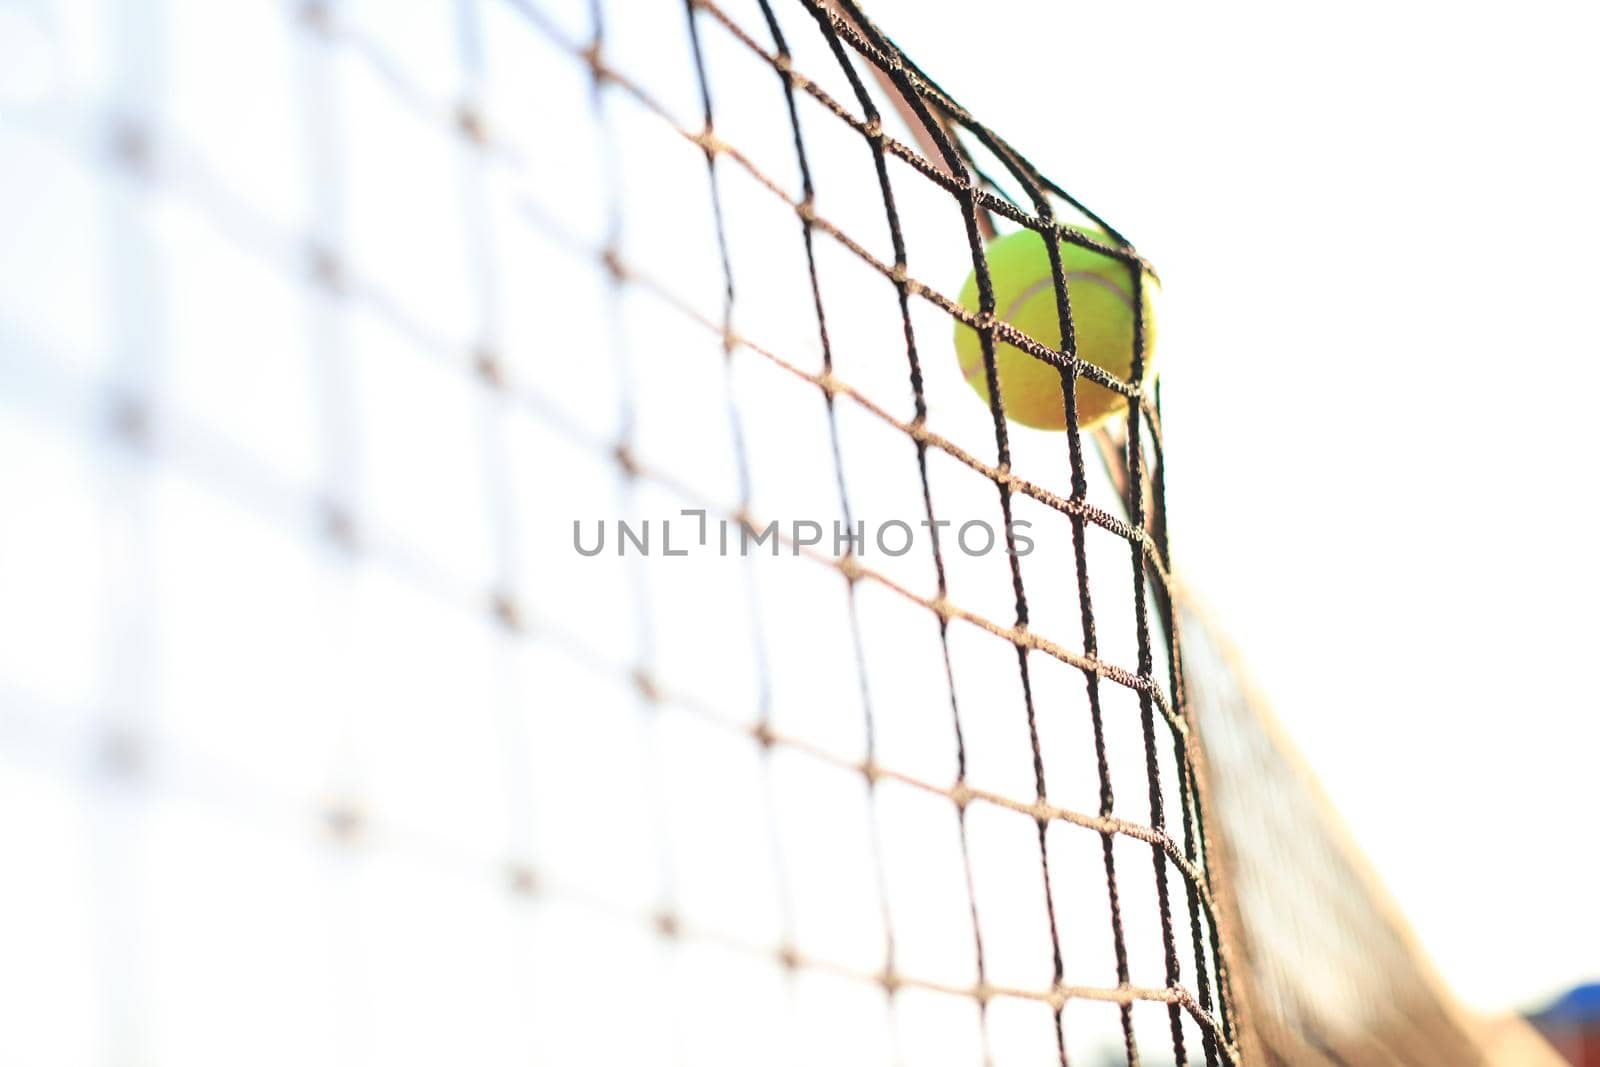 Bright greenish yellow tennis ball hitting the net